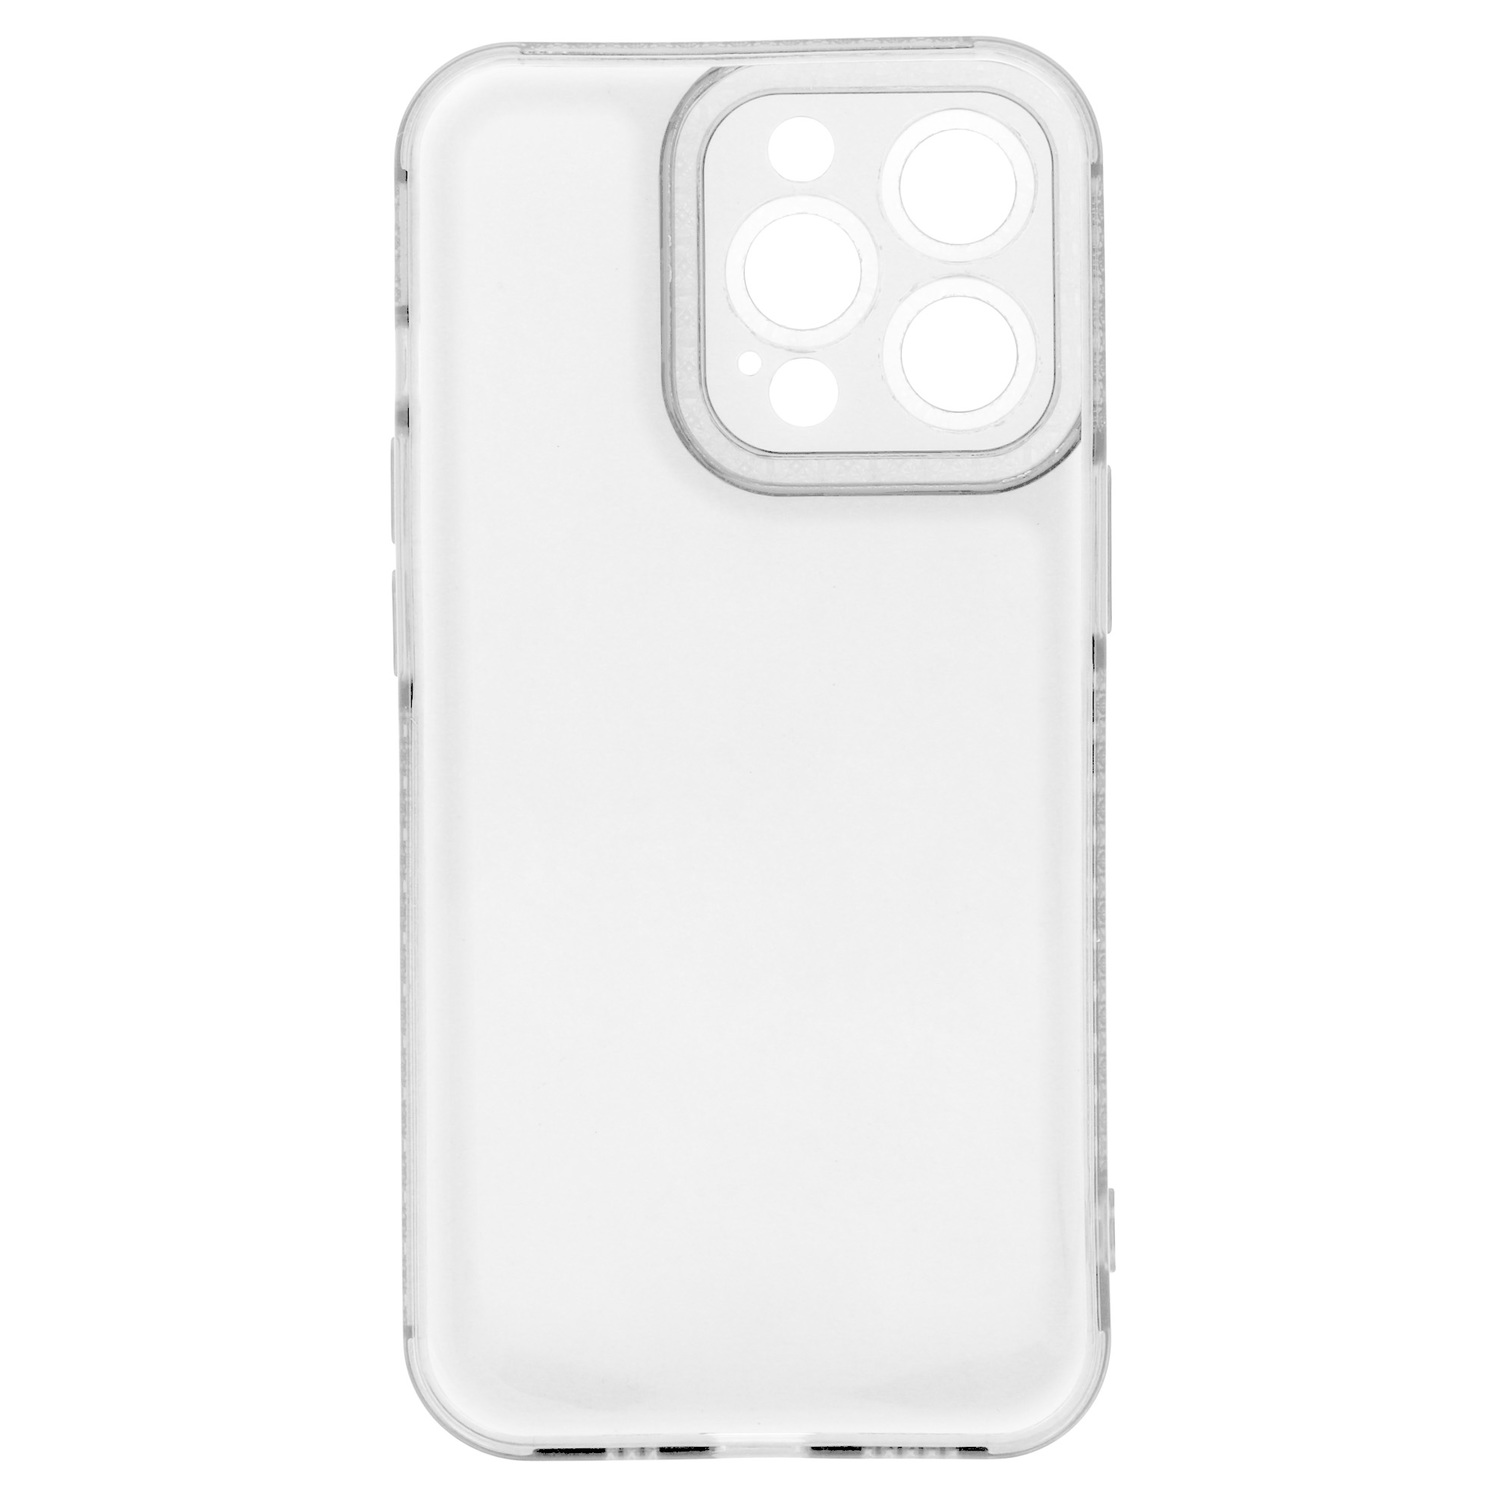 Pokrowiec etui silikonowe Crystal Diamond Case przezroczyste APPLE iPhone 11 Pro Max / 5